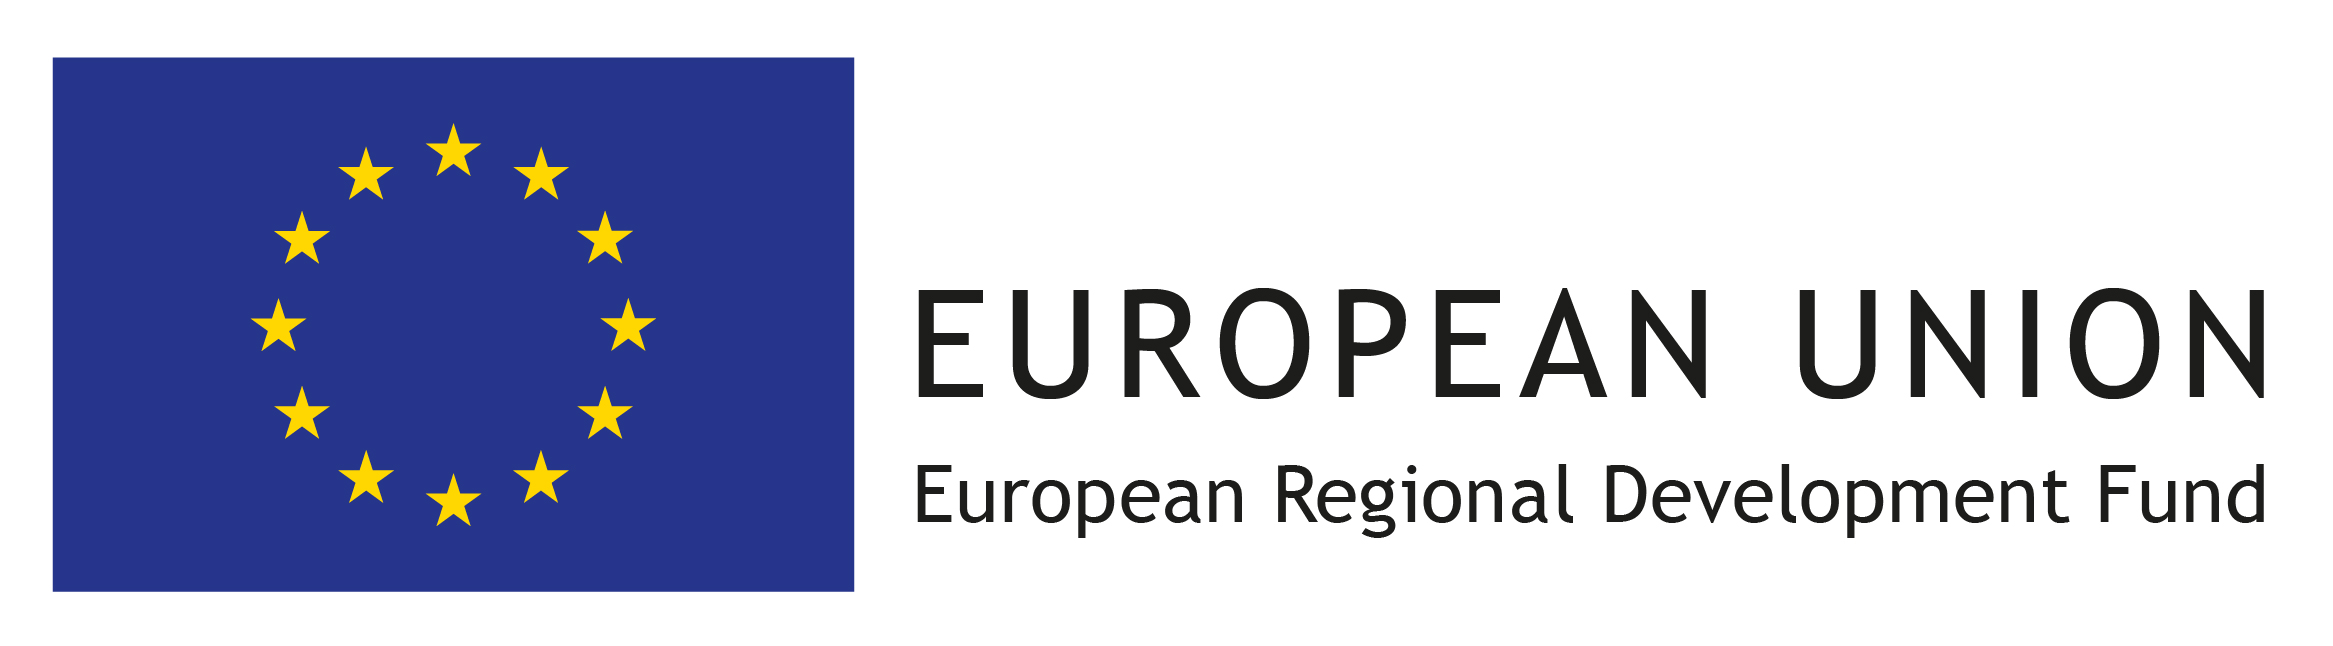 EU flag logo.